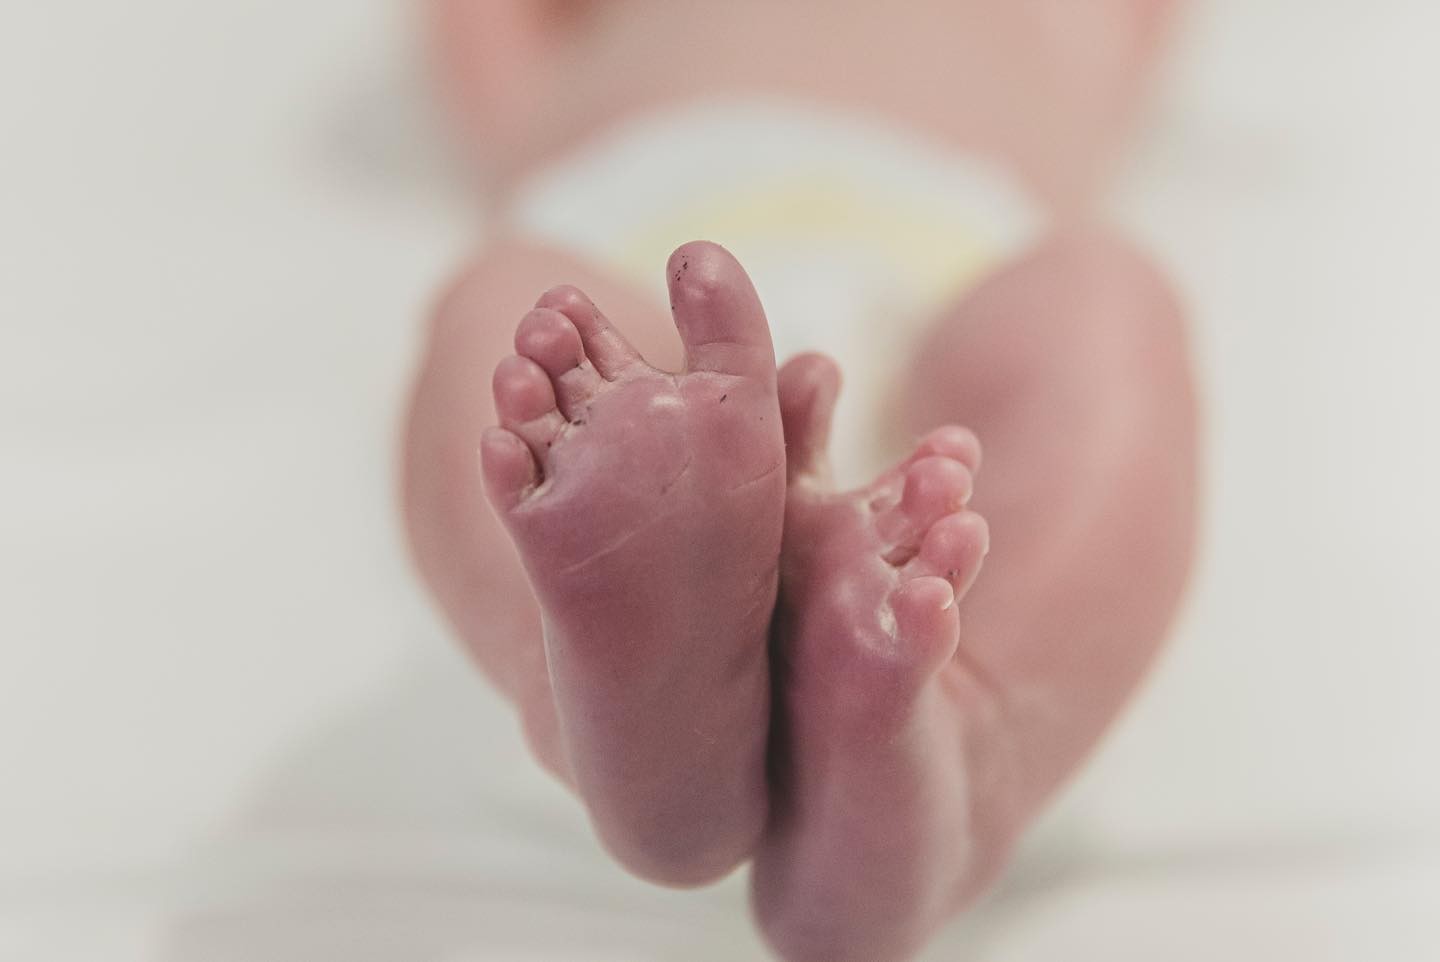 Renata Kuerten posta primeiro álbum de fotos do nascimento da filha, Lorena (Foto: Reprodução / Instagram)